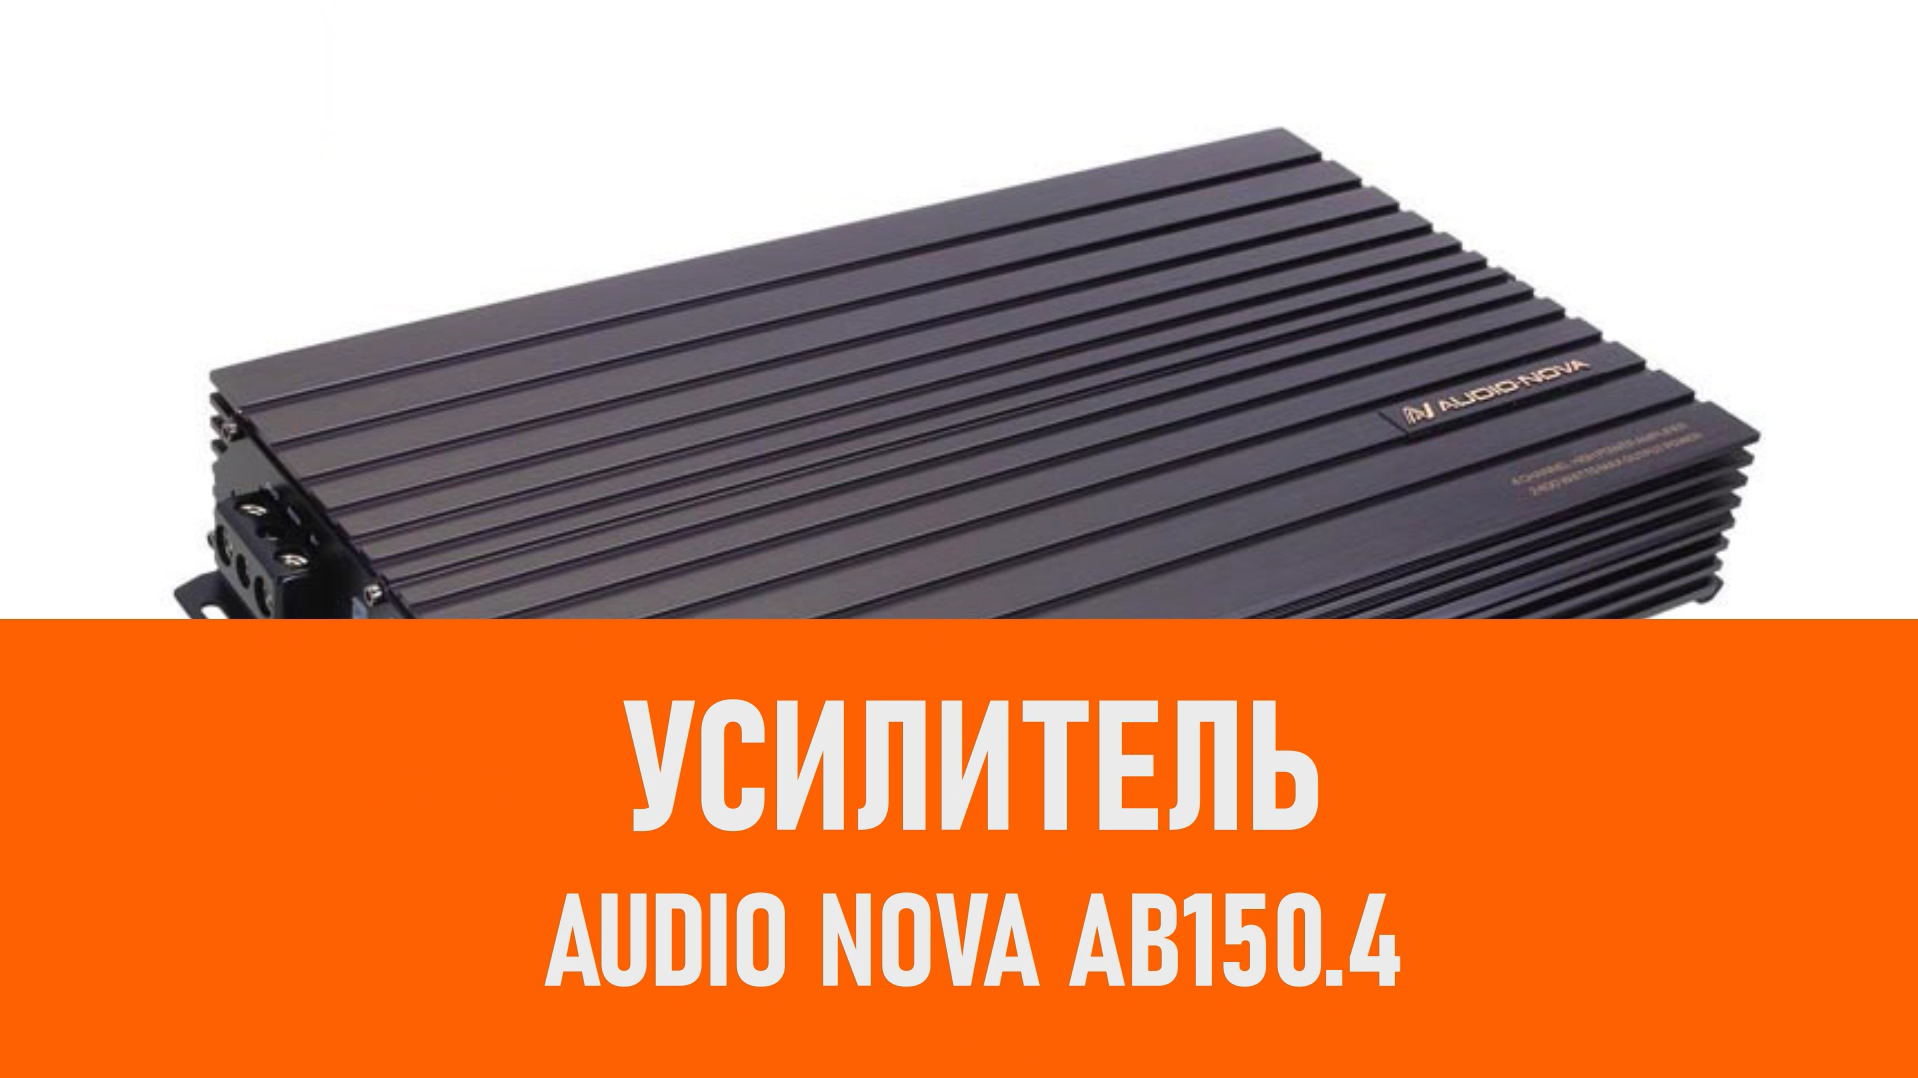 Распаковка усилителя AUDIO NOVA AB150.4